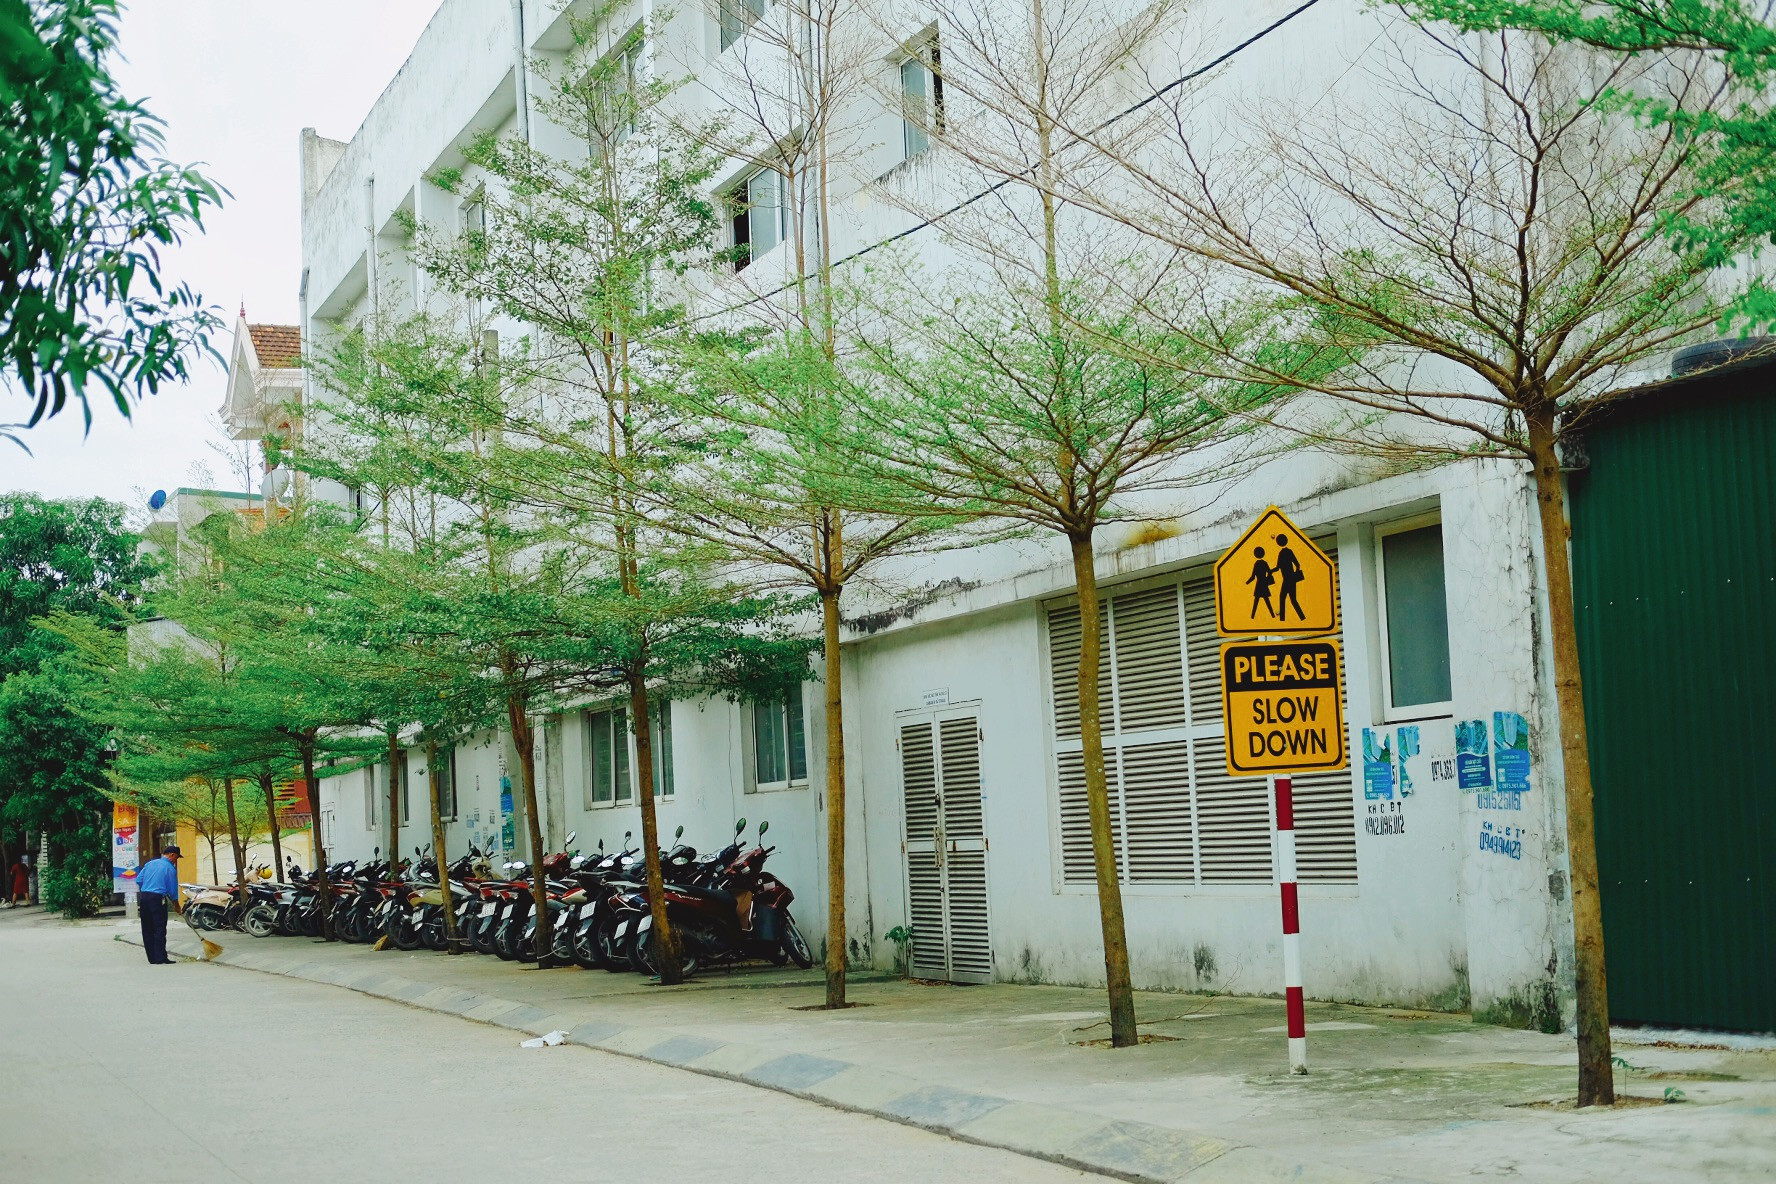 Một góc vỉa hè sạch sẽ, yên tĩnh dưới hàng cây xanh mát giống như khung cảnh một con phố ở Hàn Quốc, Nhật Bản. Ảnh: Hà Giang